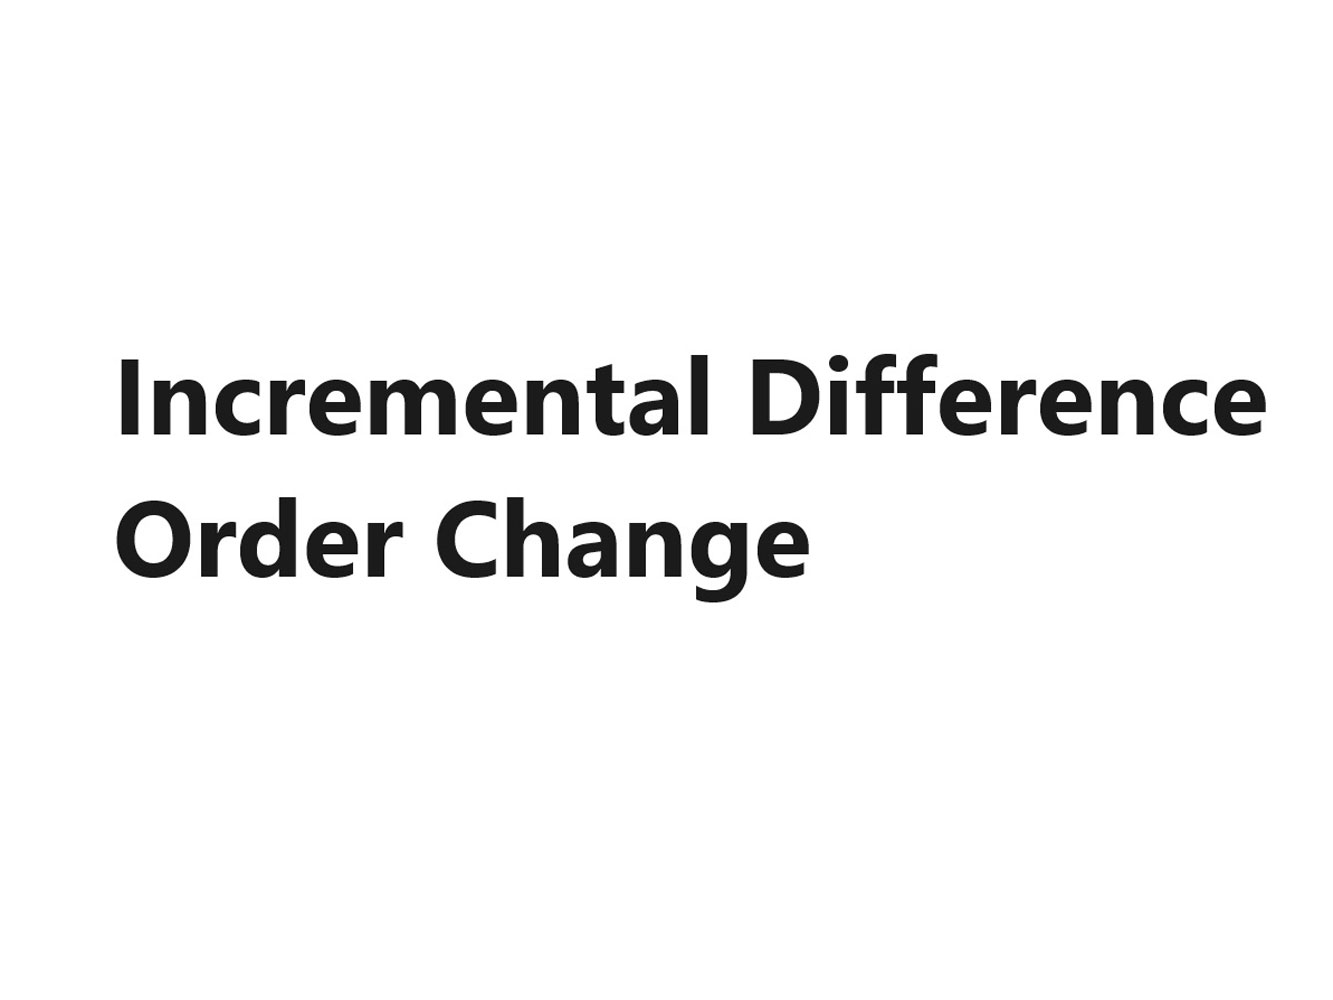 Order Change